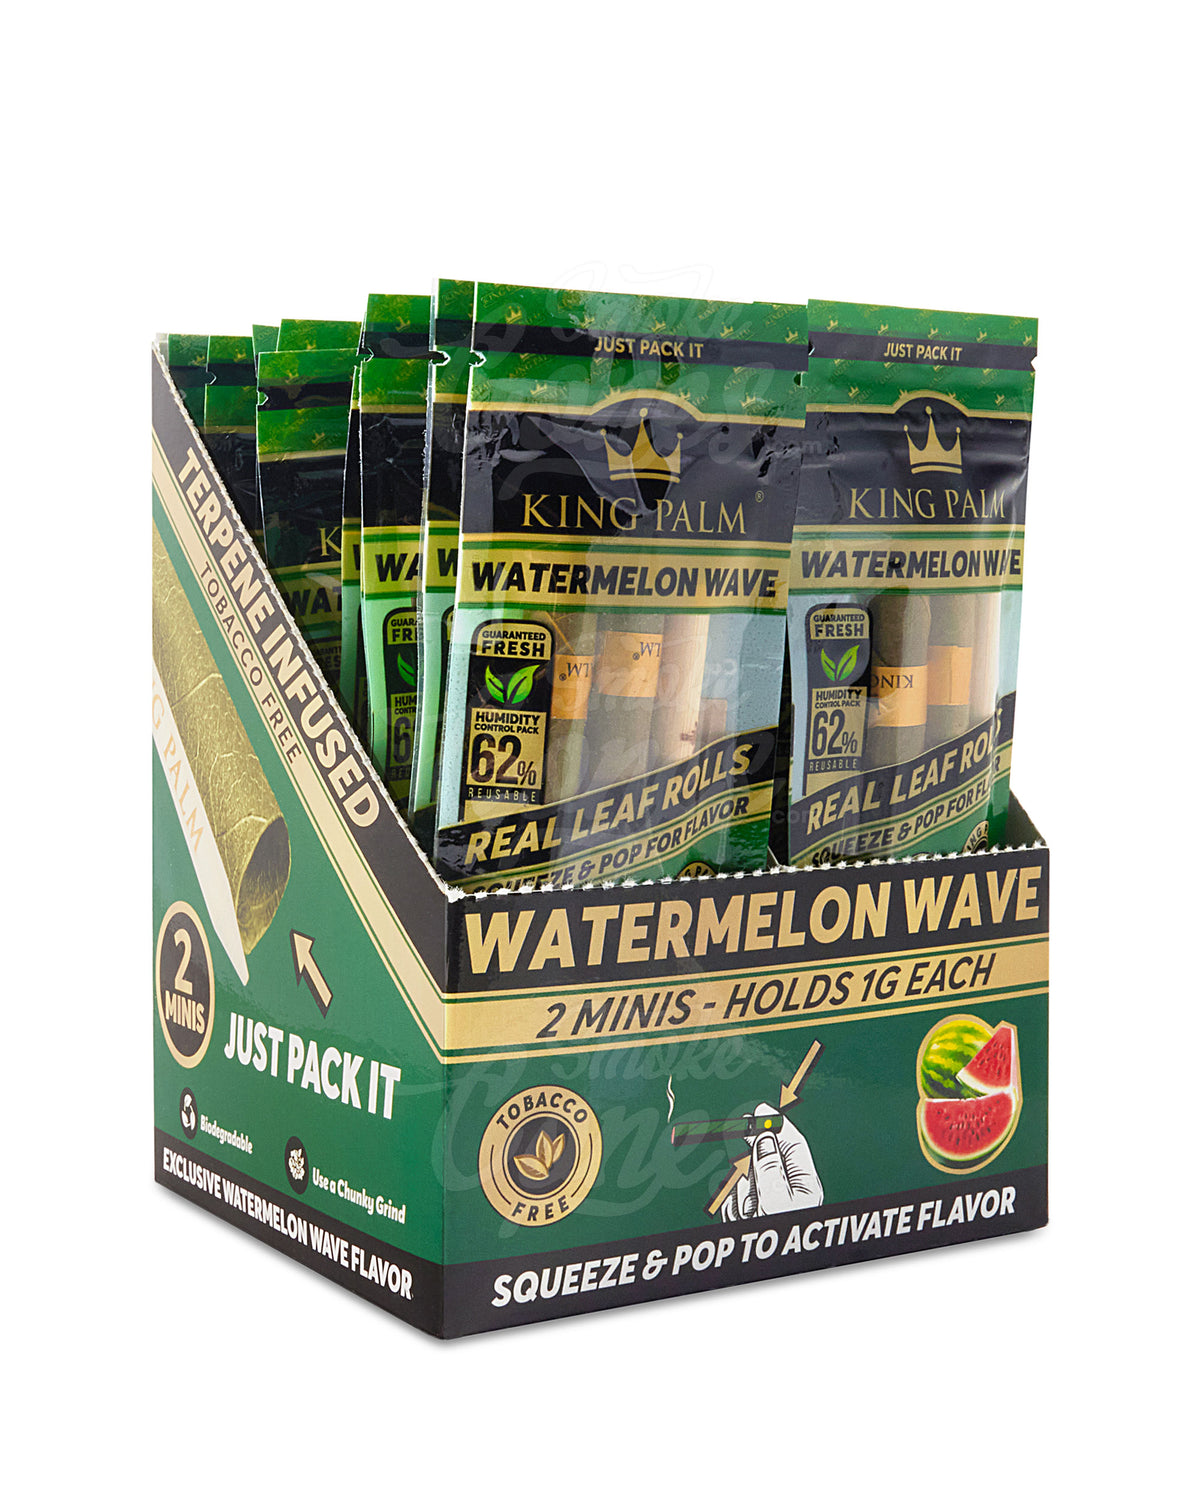 King Palm Watermelon Wave Flavored Mini Rolls 2 Packs 20/Box